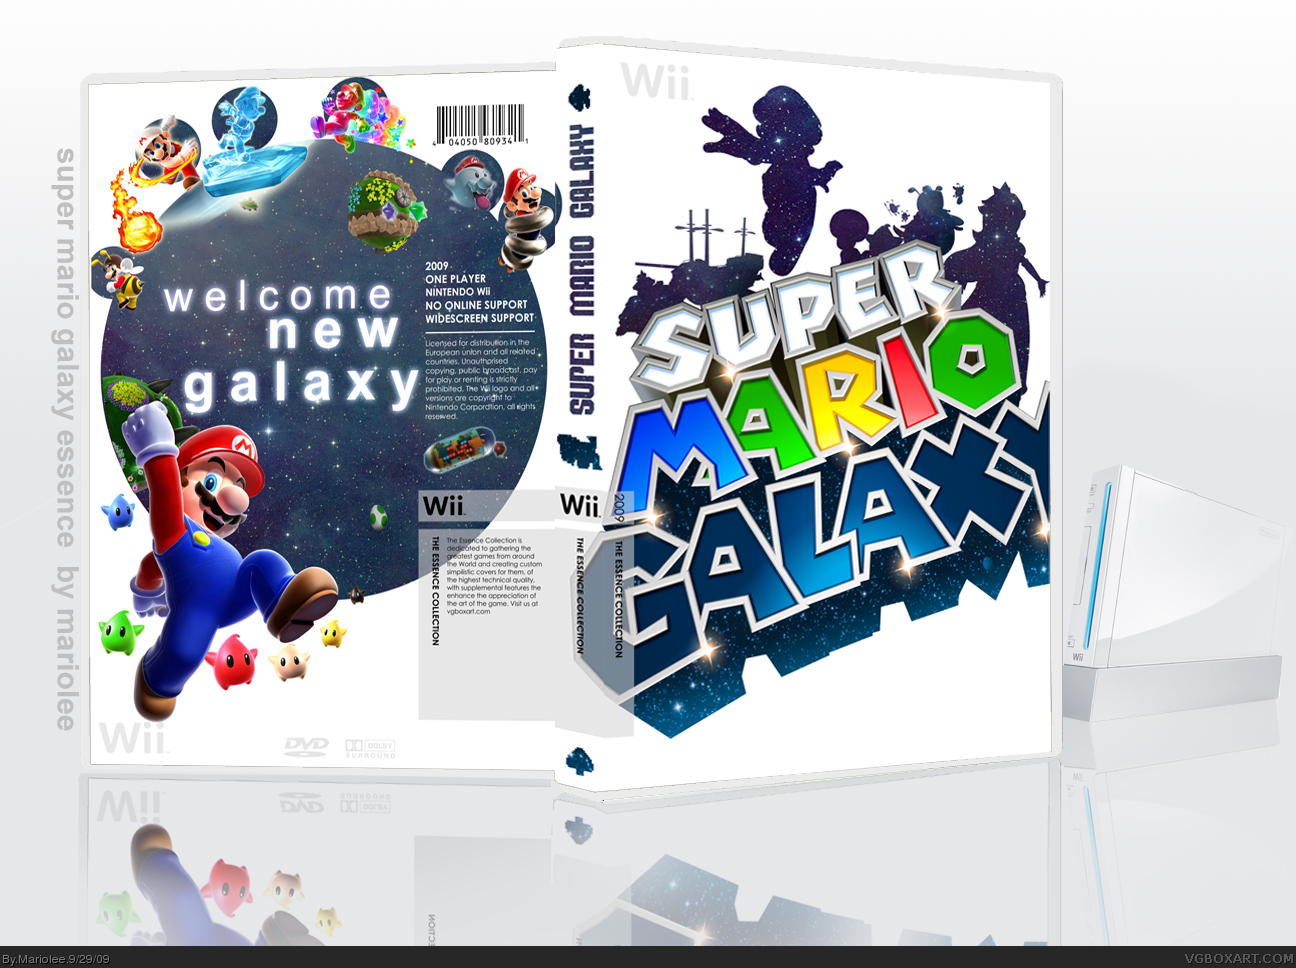 Super Mario Galaxy box cover